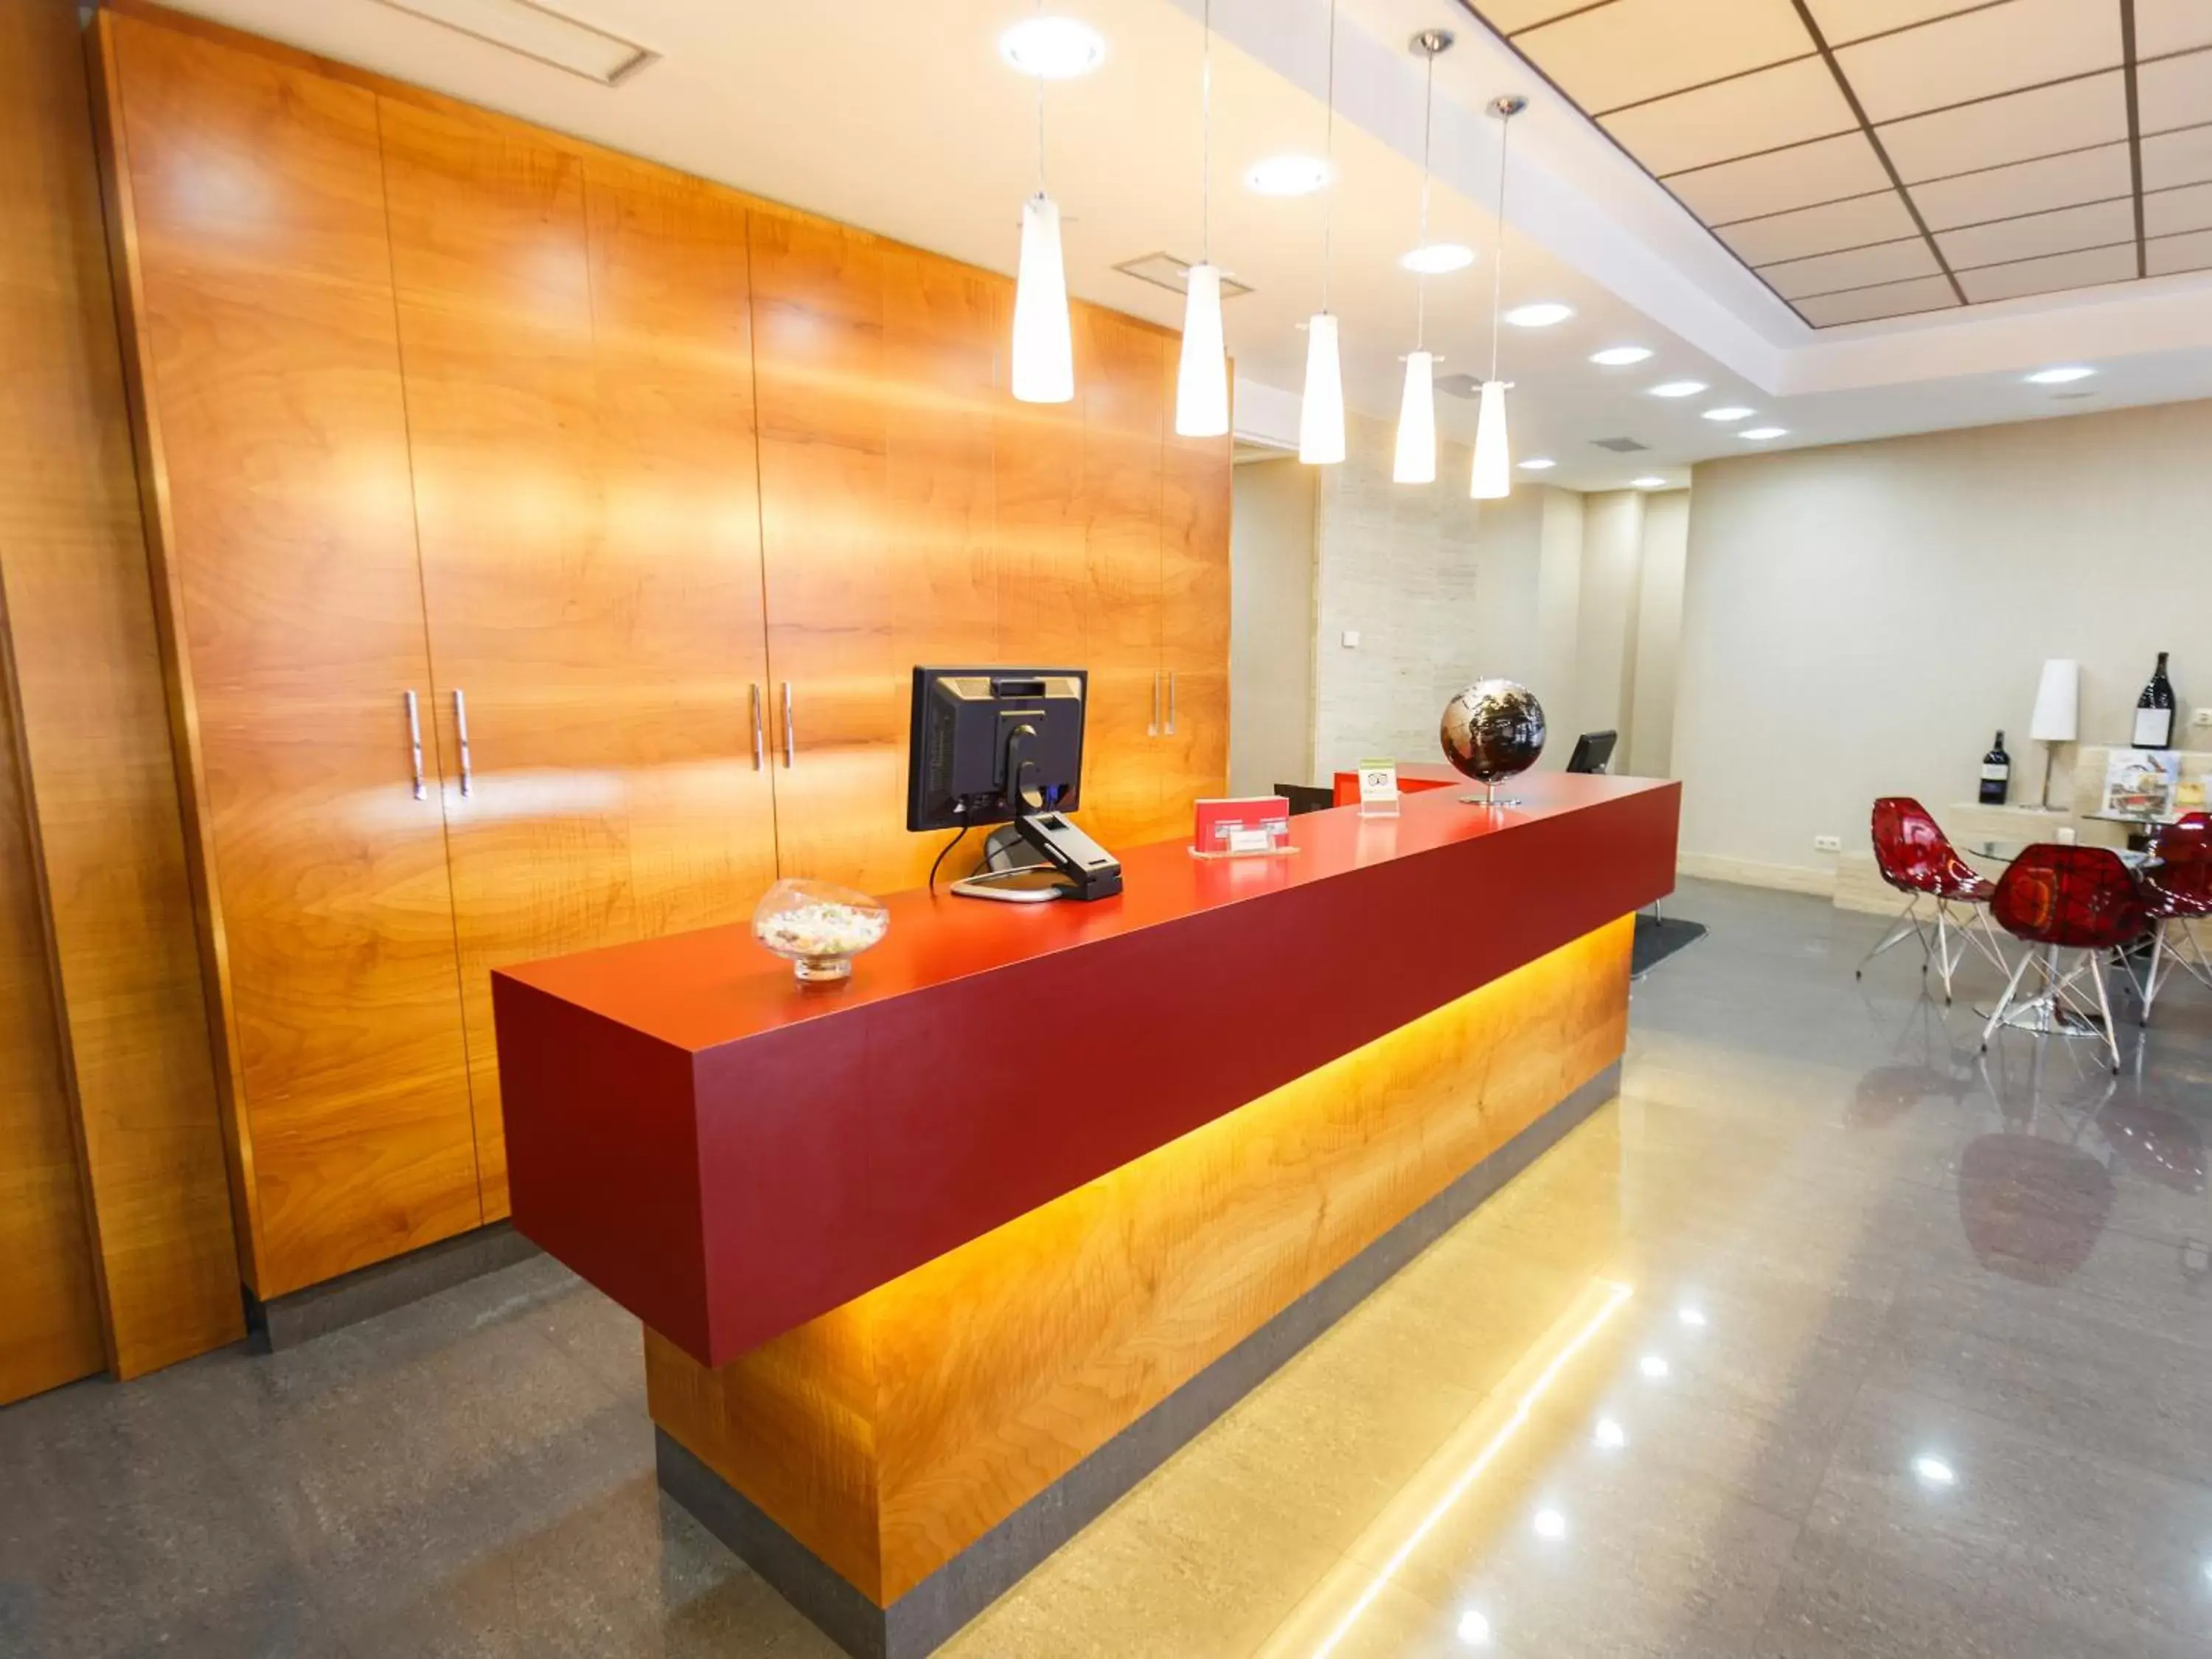 Lobby or reception, Lobby/Reception in Hotel Condes de Haro